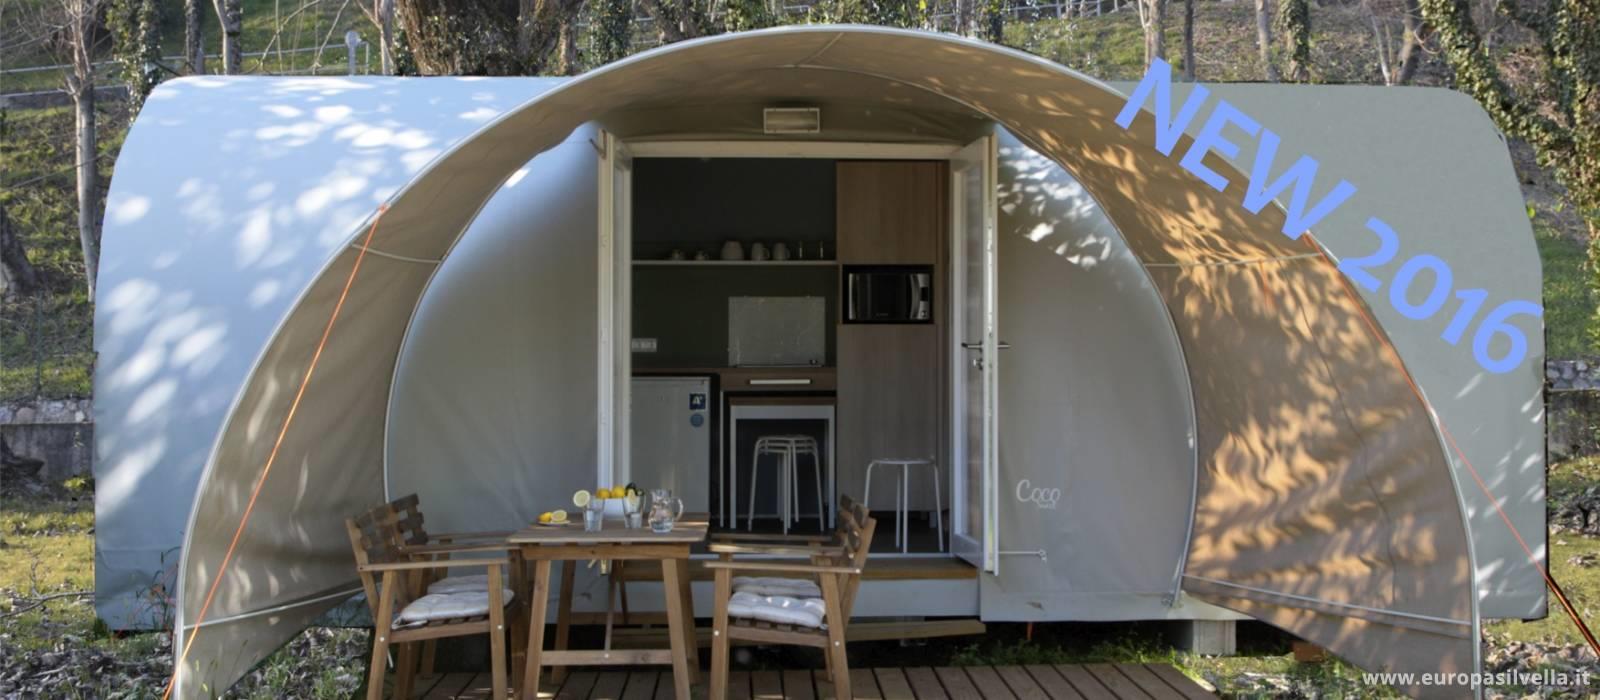 Location - Tente Coco Blu - Camping Villaggio Europa Silvella